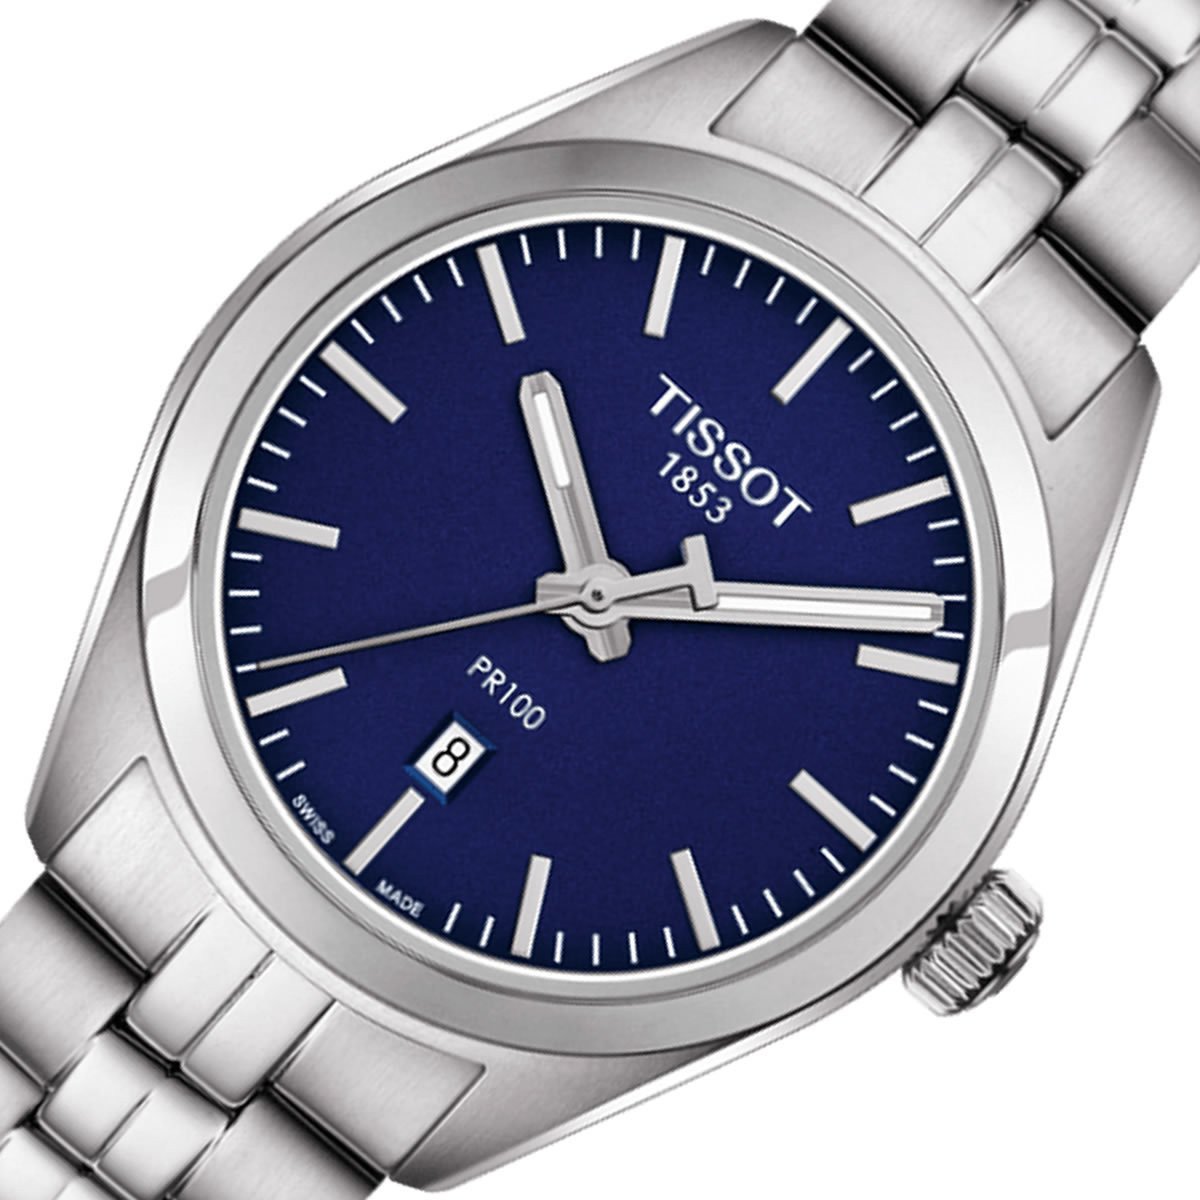 Tissot PR 100 Lady Blue Dial Quartz Watch For Women - T101.210.11.041.00